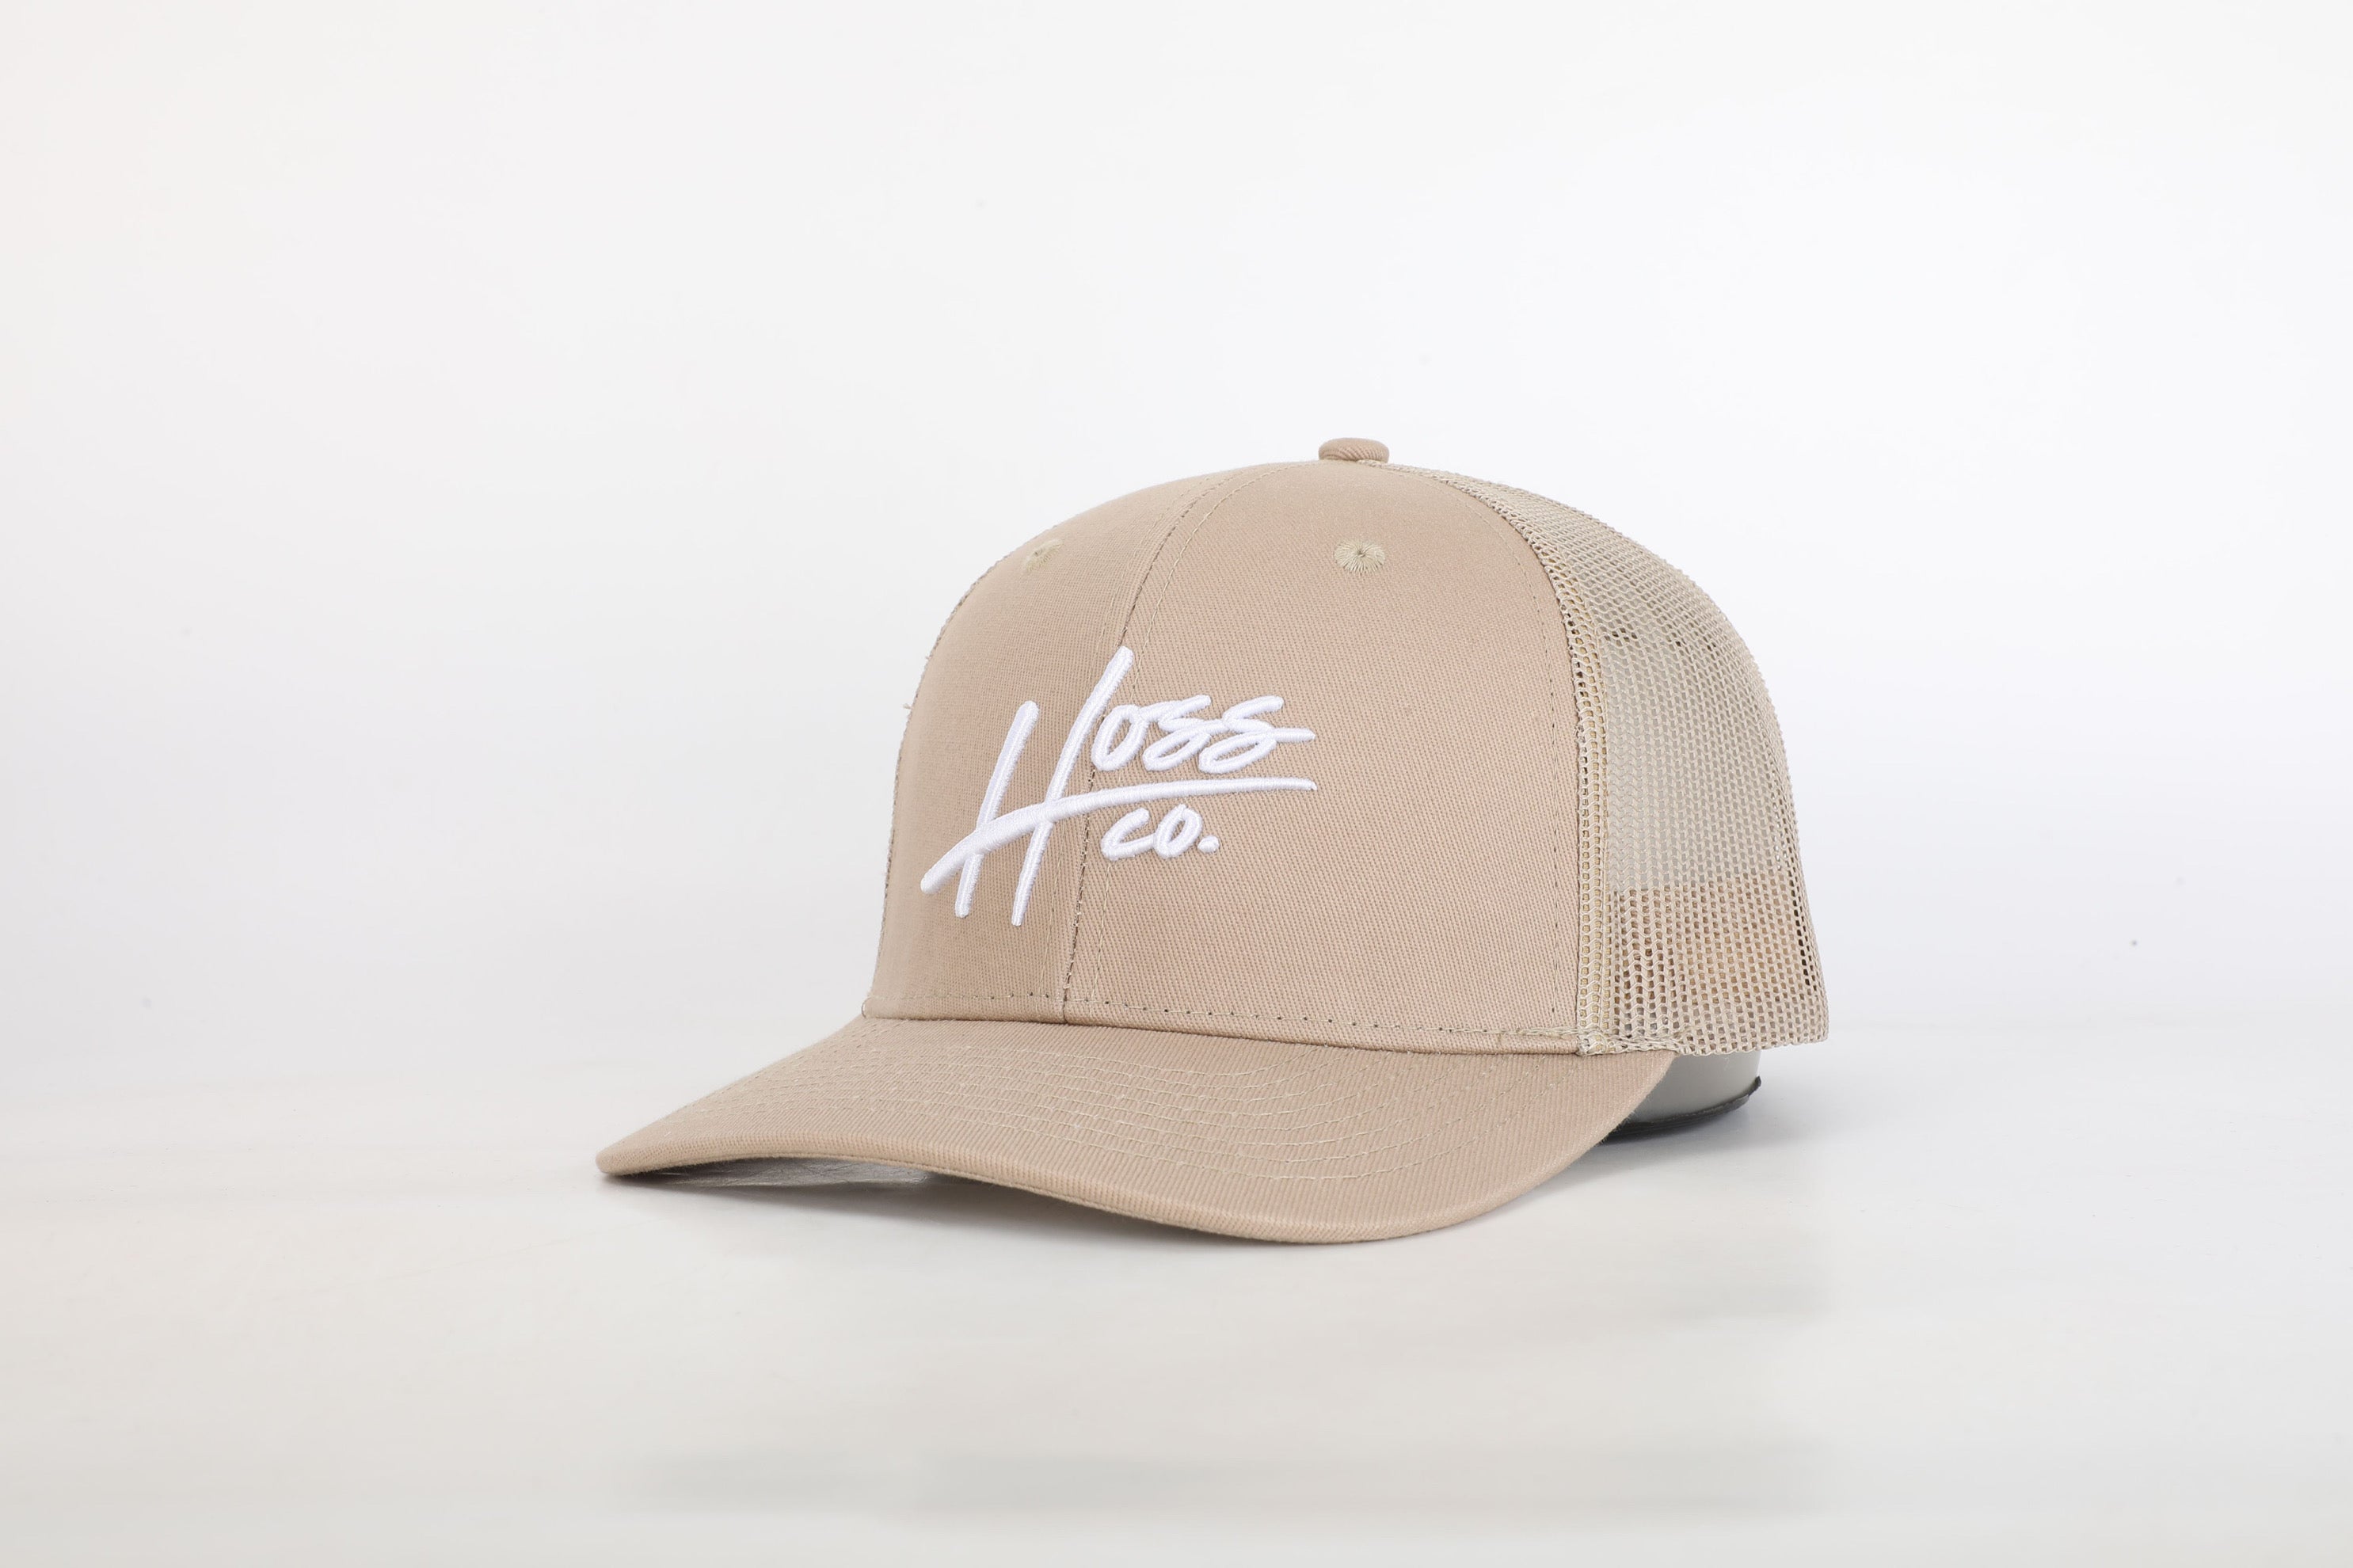 Hoss Khaki Trucker Hat